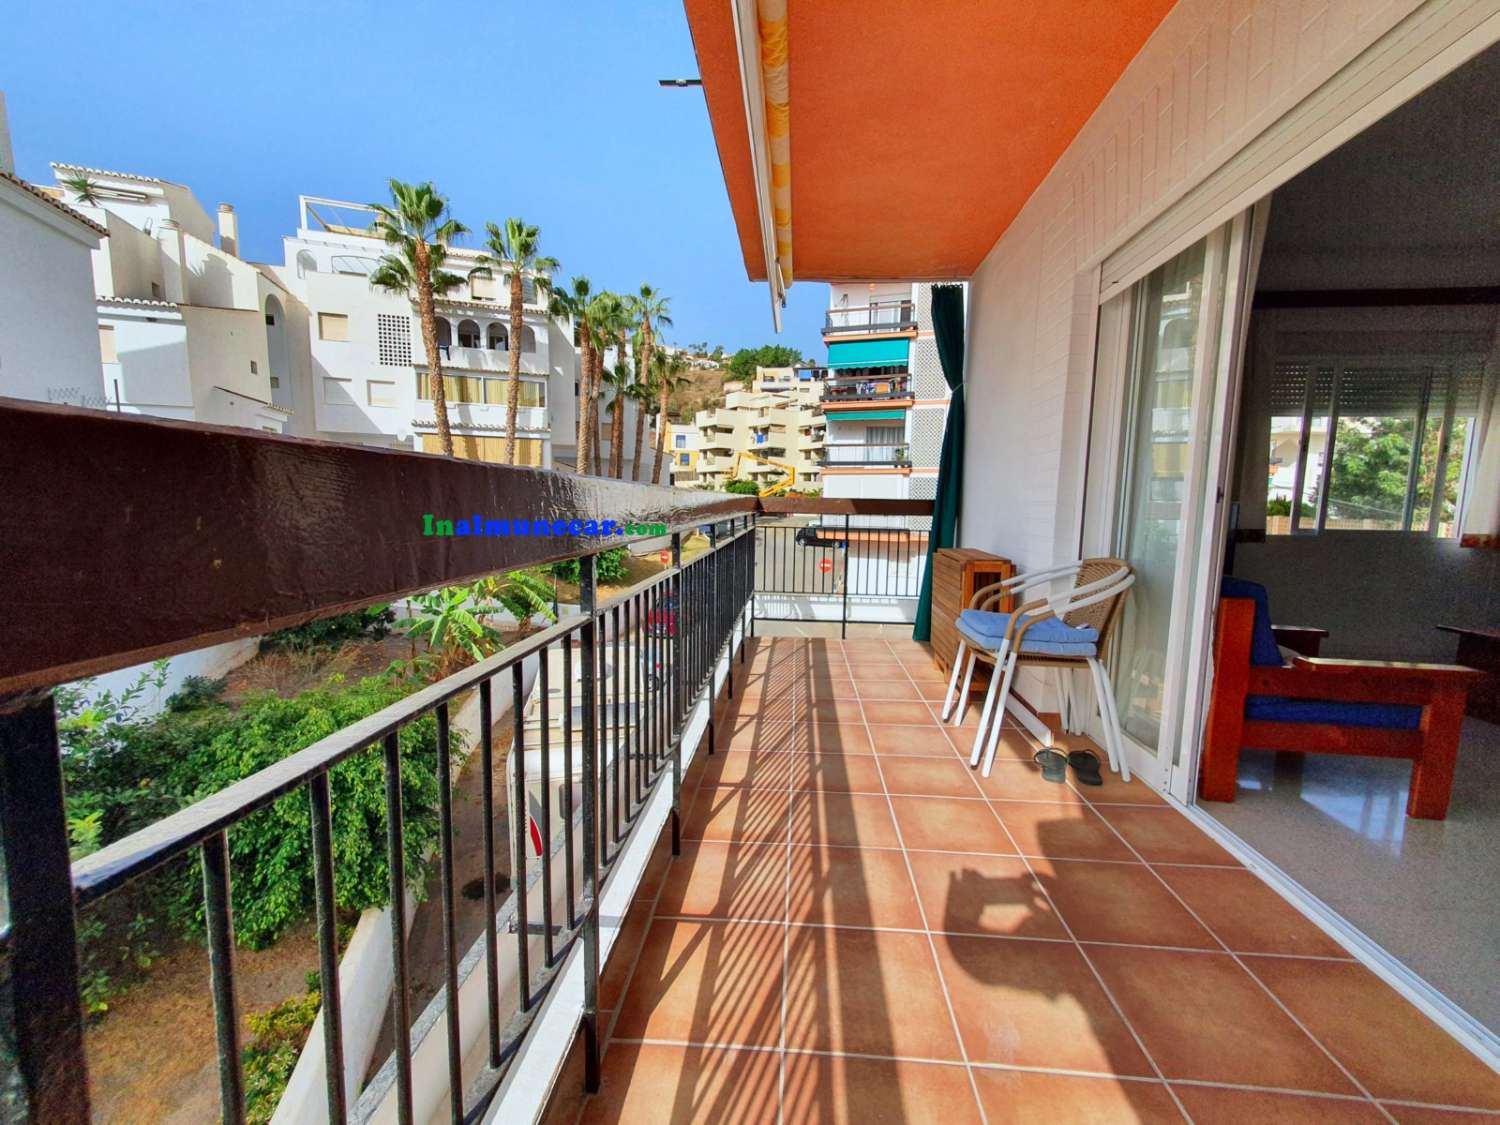 Se vende piso reformado en Almuñecar situado en  2º línea de Playa con aparcamiento comunitario.